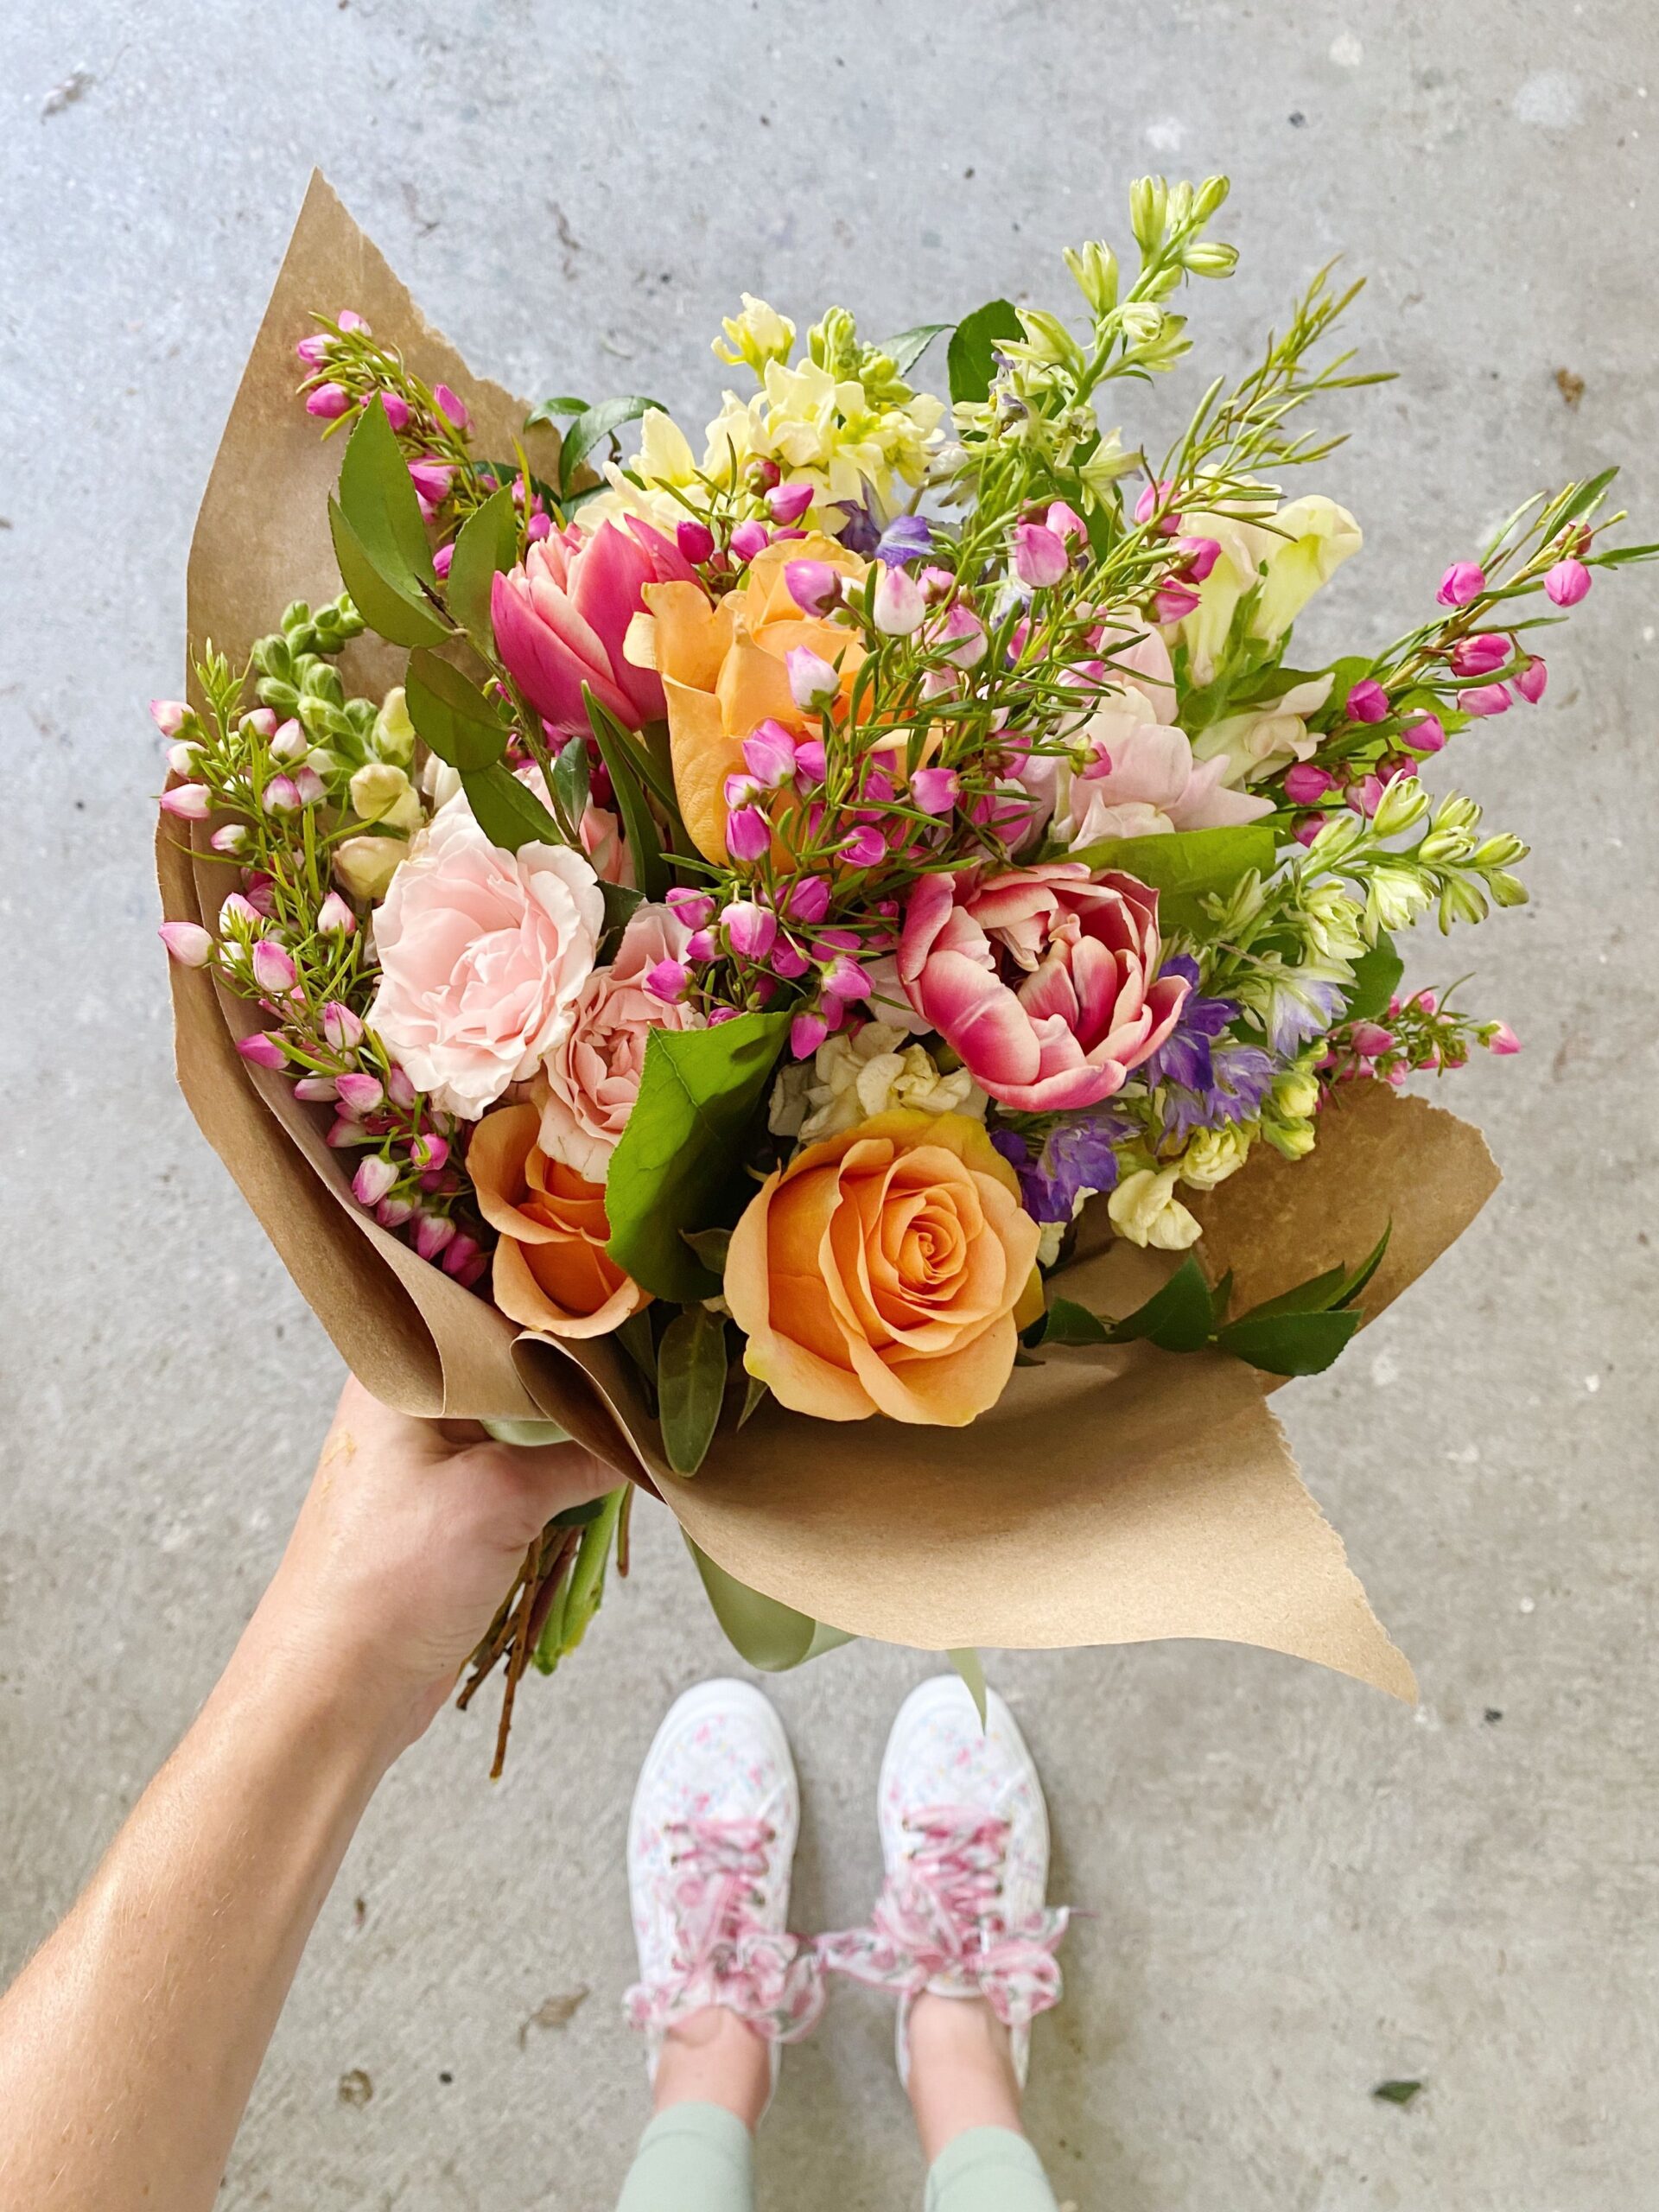 10 Heartwarming Mother’s Day Flower Arrangements to Brighten Her Day